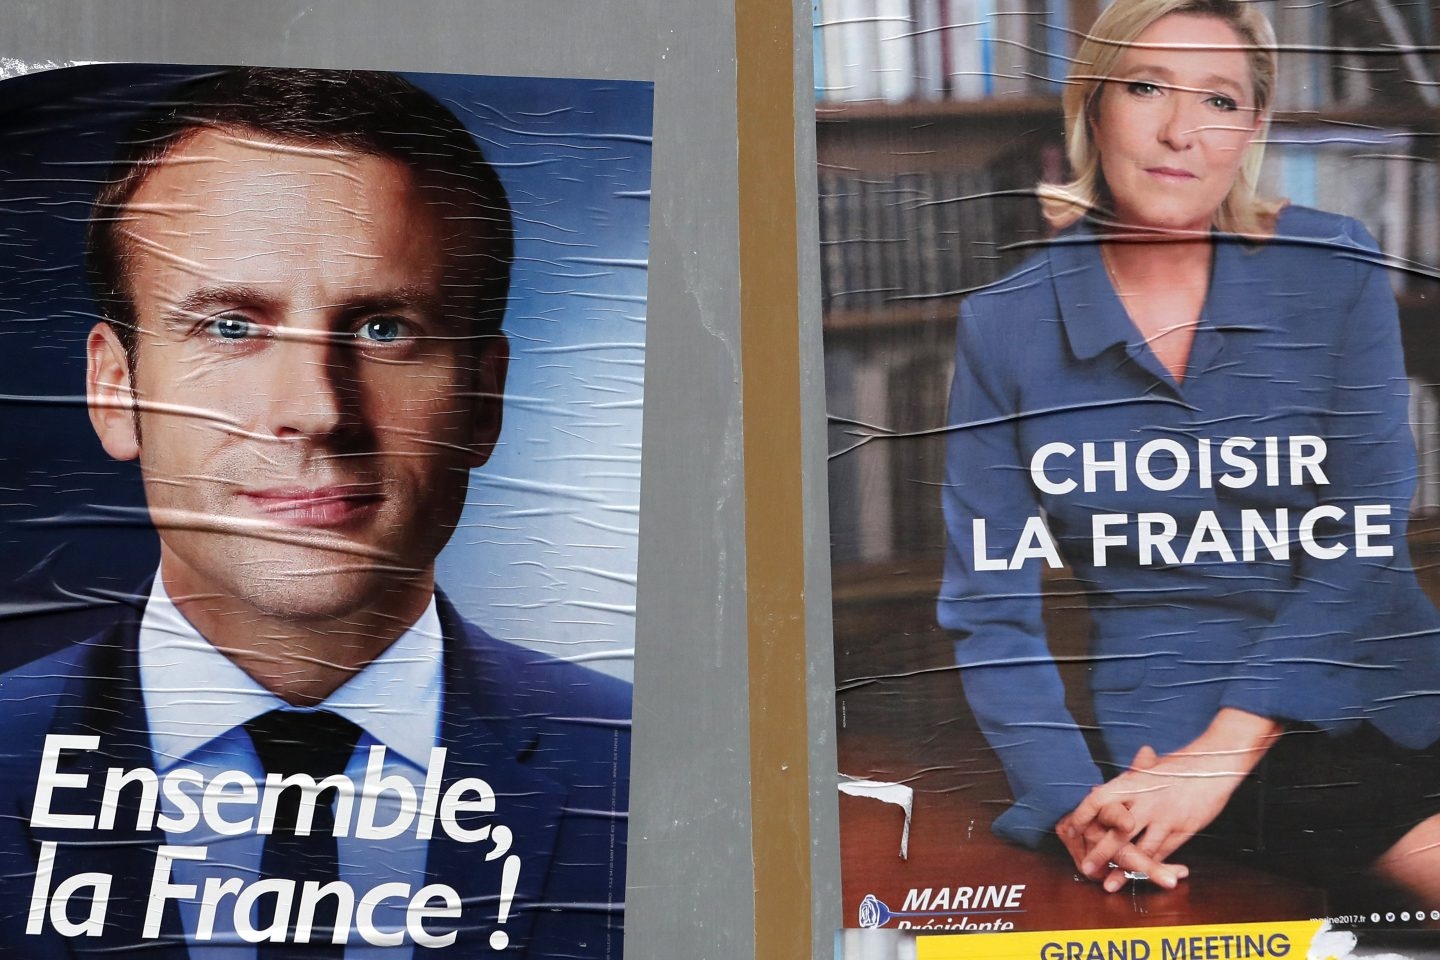 Los carteles de ambos candidatos en Francia.